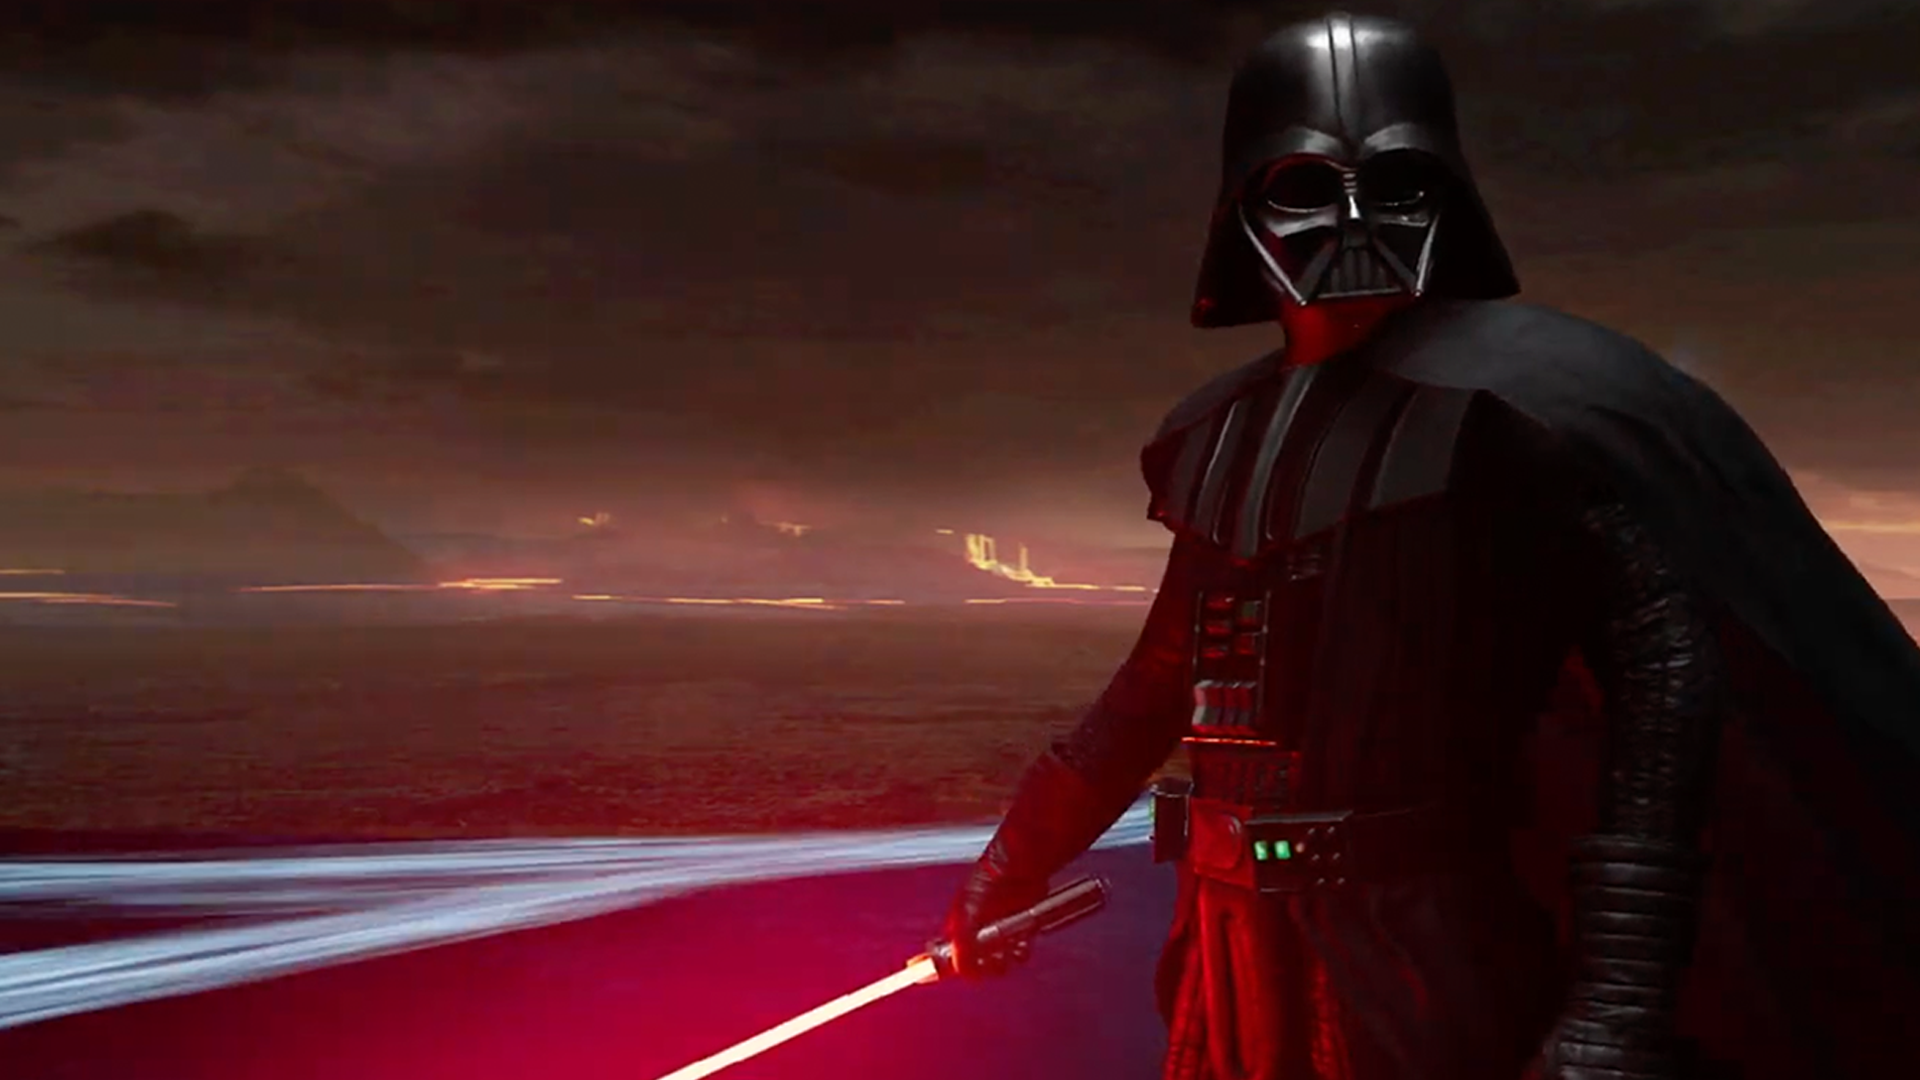 Vader Immortal: The Star Wars VR